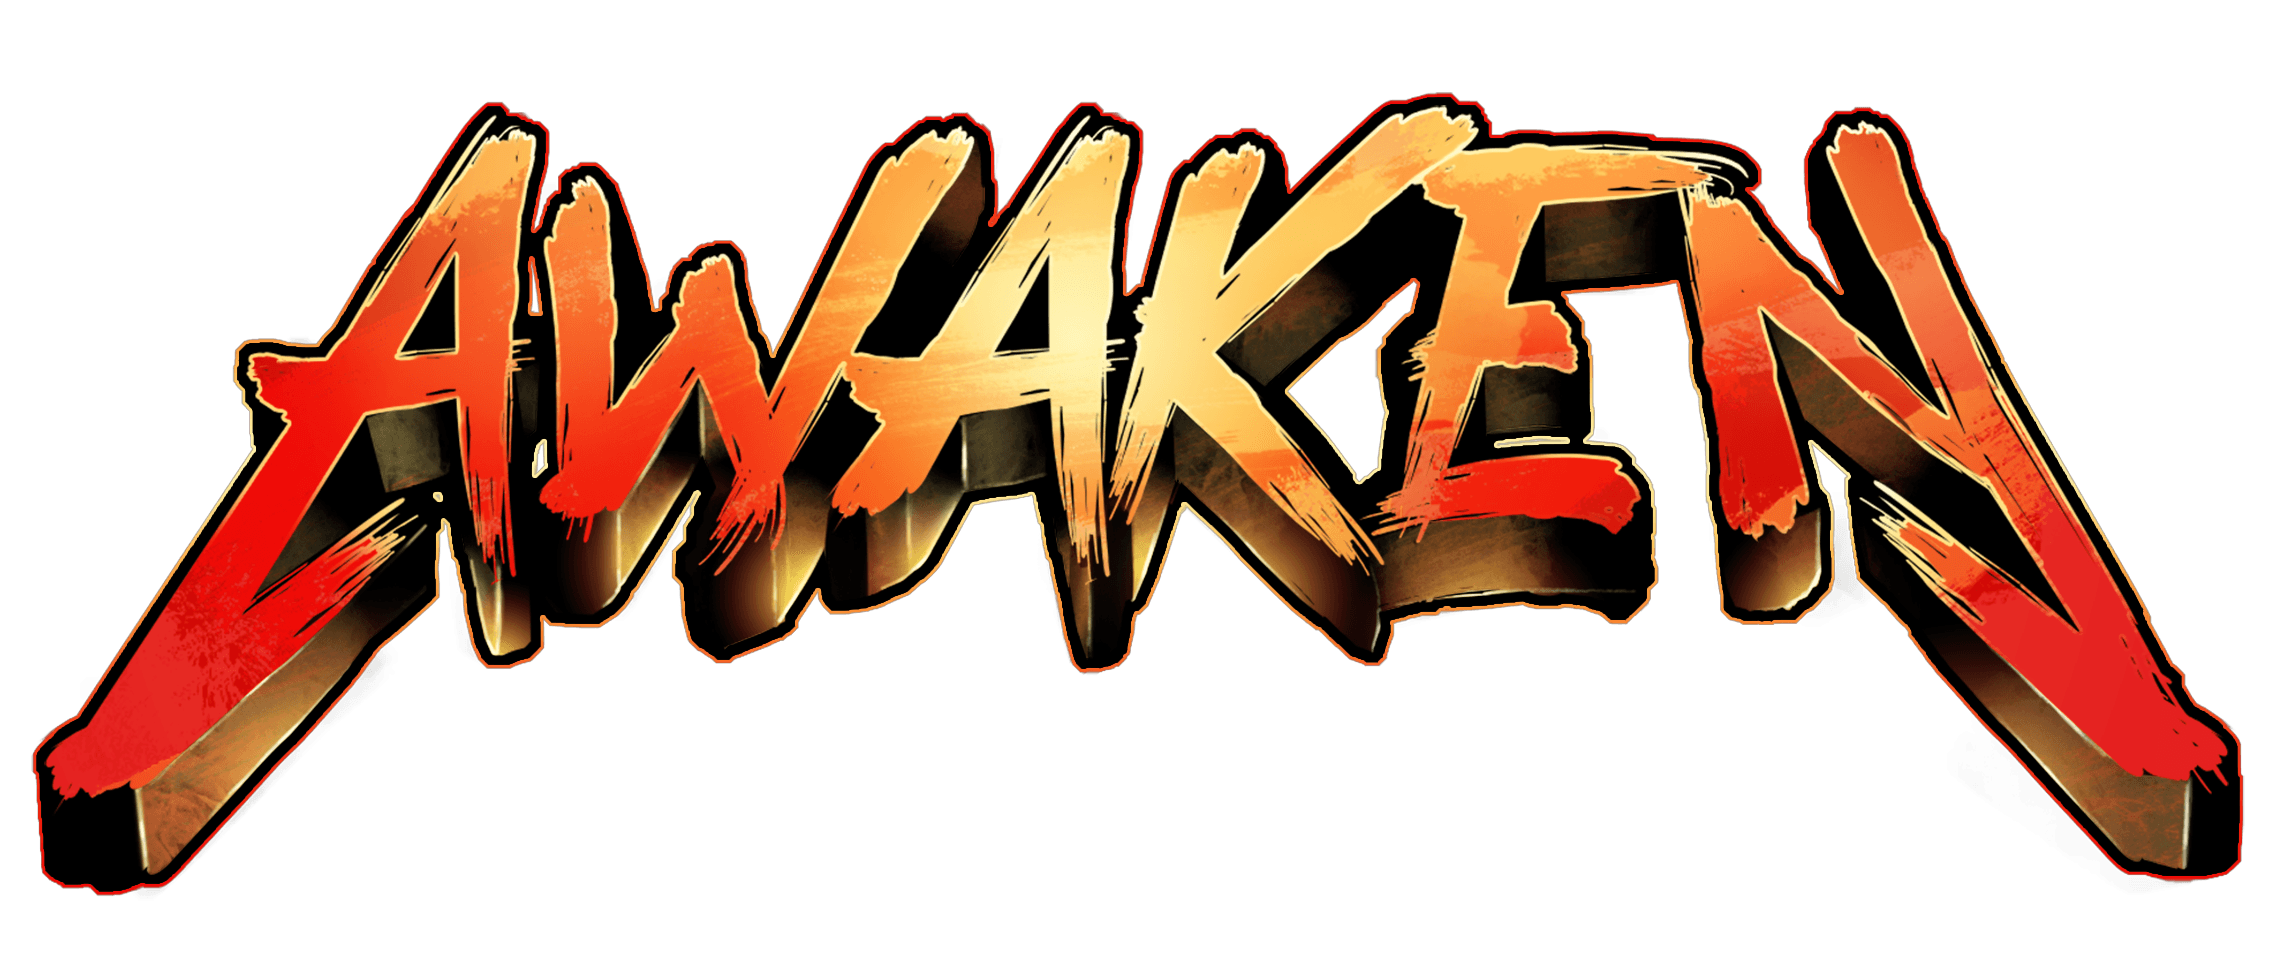 Awaken logo.png